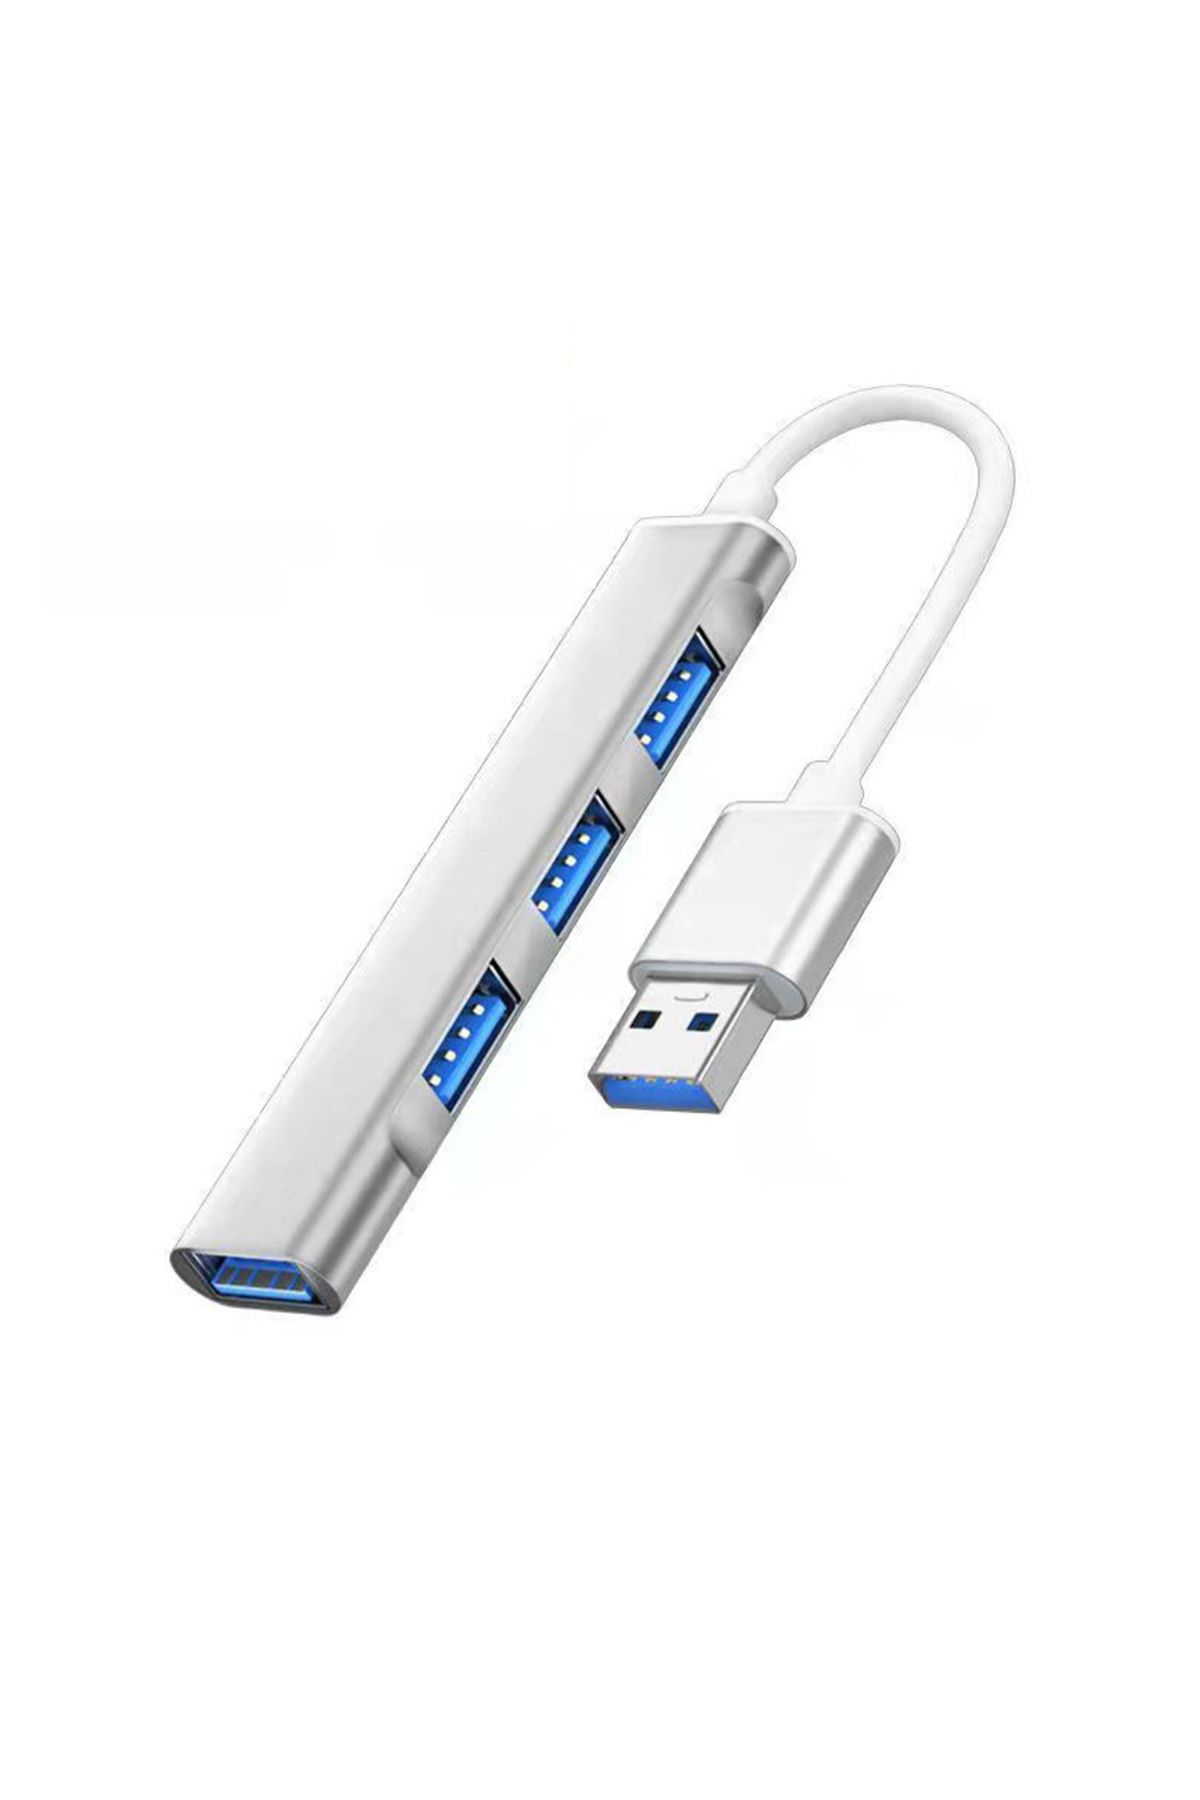 TrkTech USB 3.0 HUB 4 Girişli Usb Çoğaltıcı Usb 3.0 Hub 4 Ports